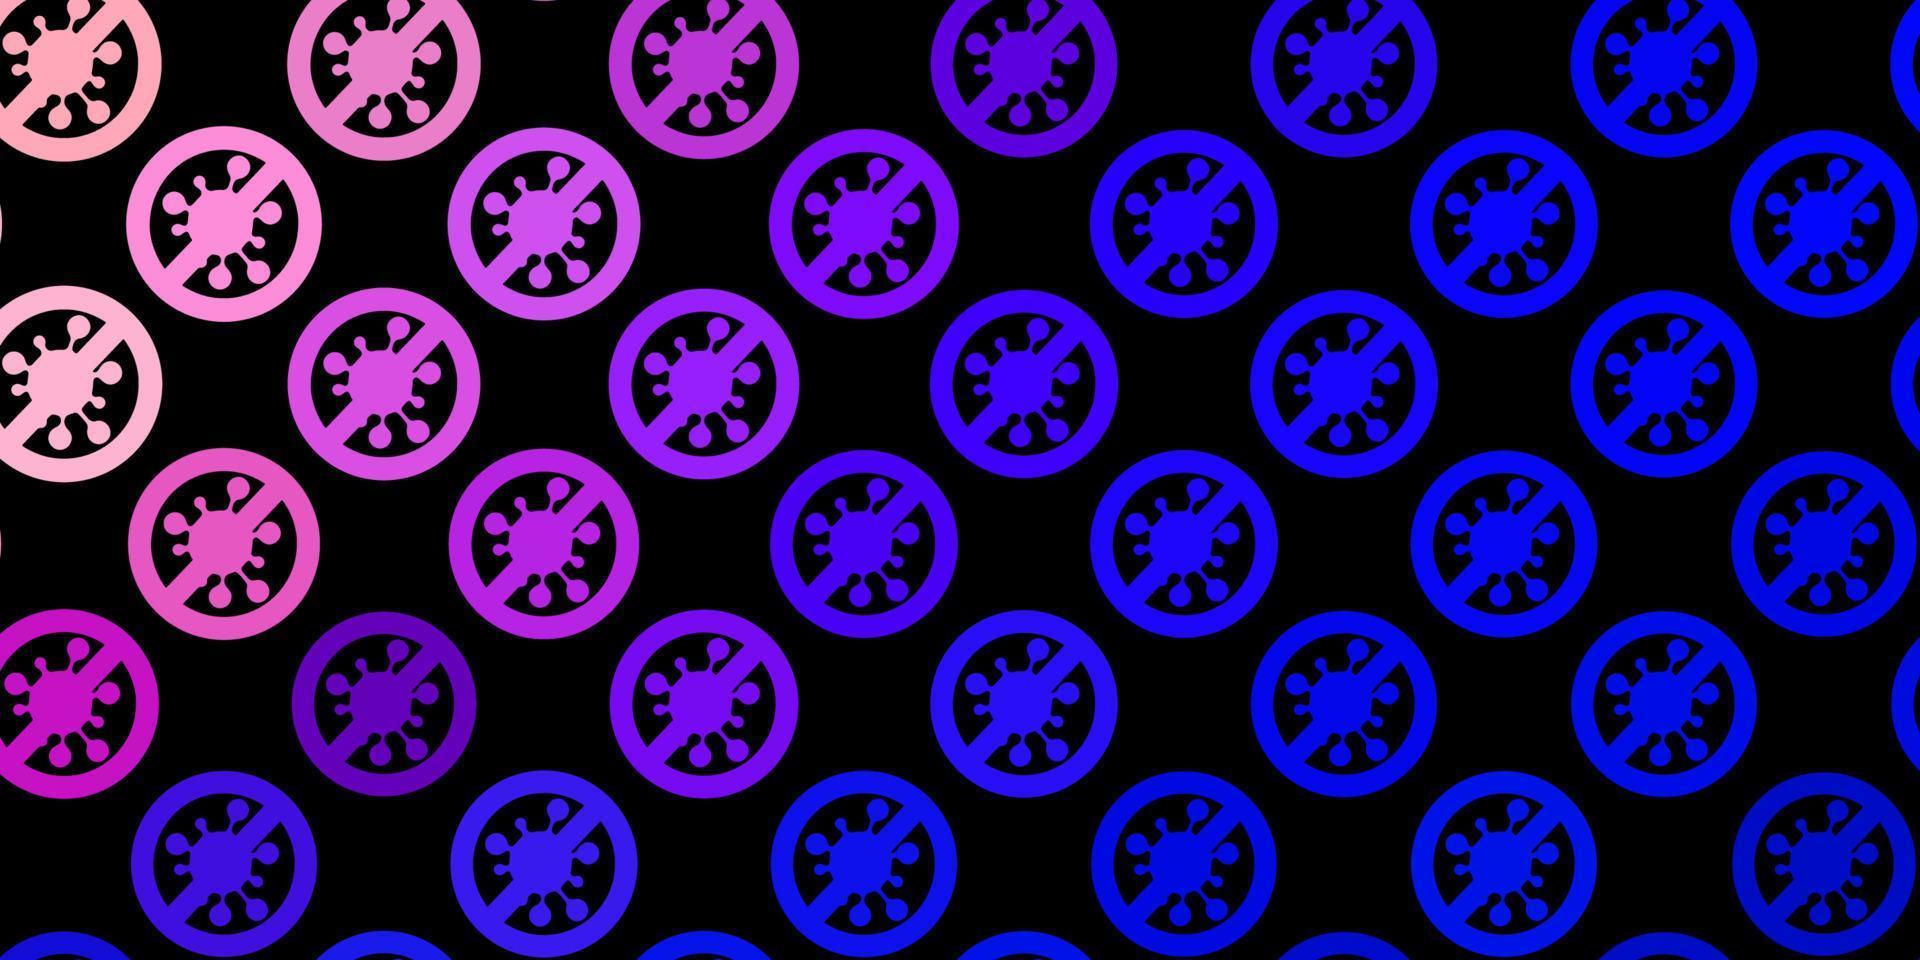 pano de fundo vector azul e amarelo escuro com símbolos de vírus.